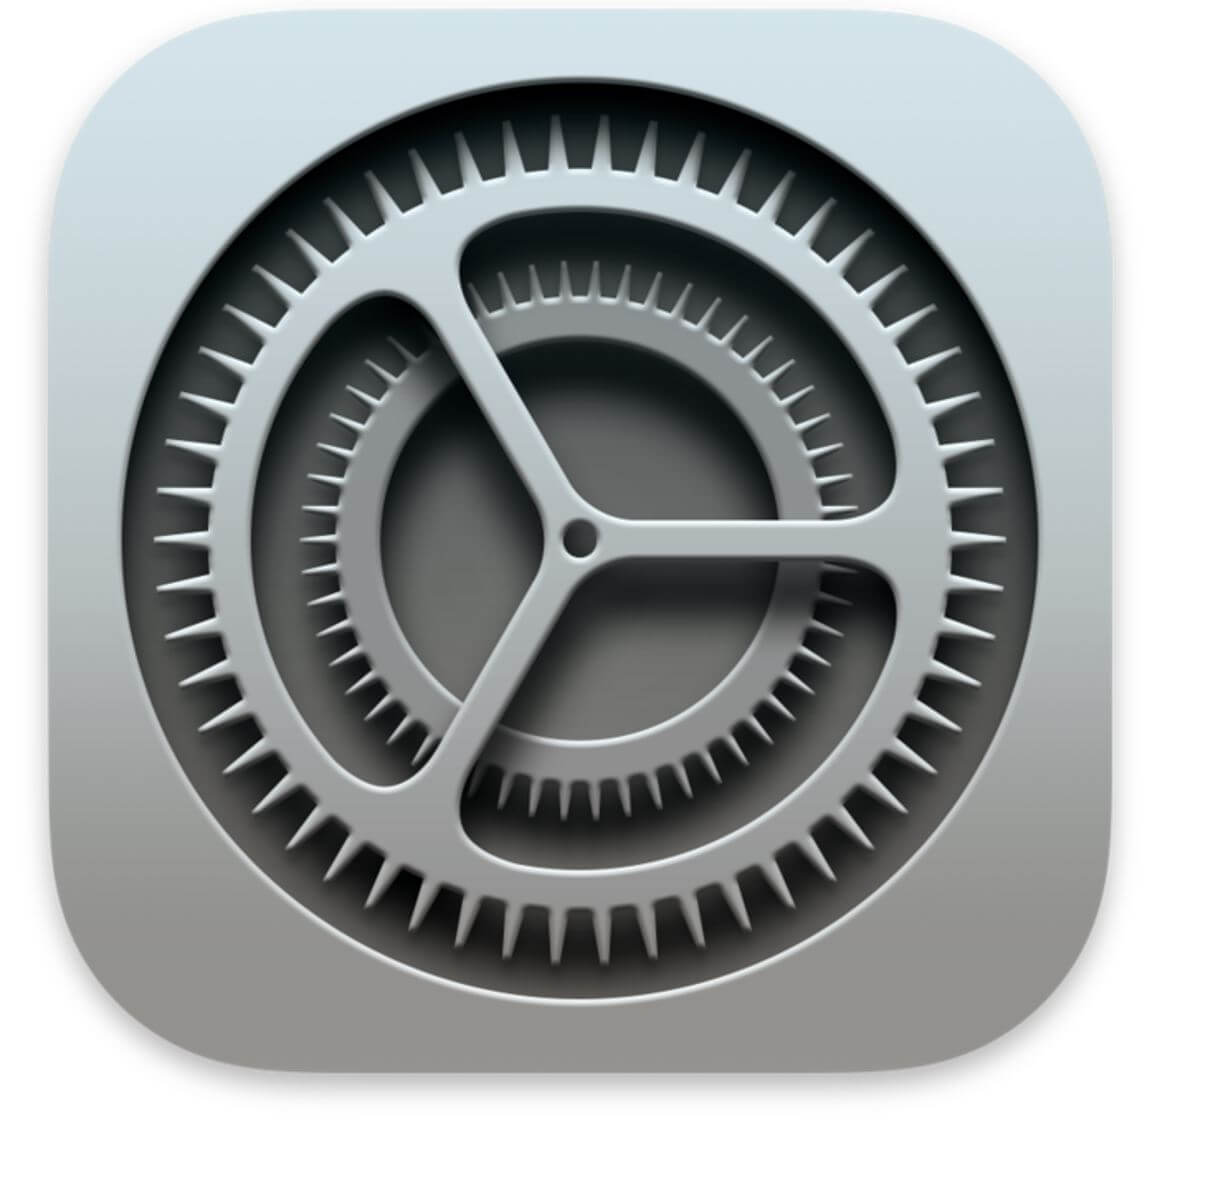 L'icône de l'application Réglages sur un iPhone est un carré gris avec un engrenage mécanique au centre.